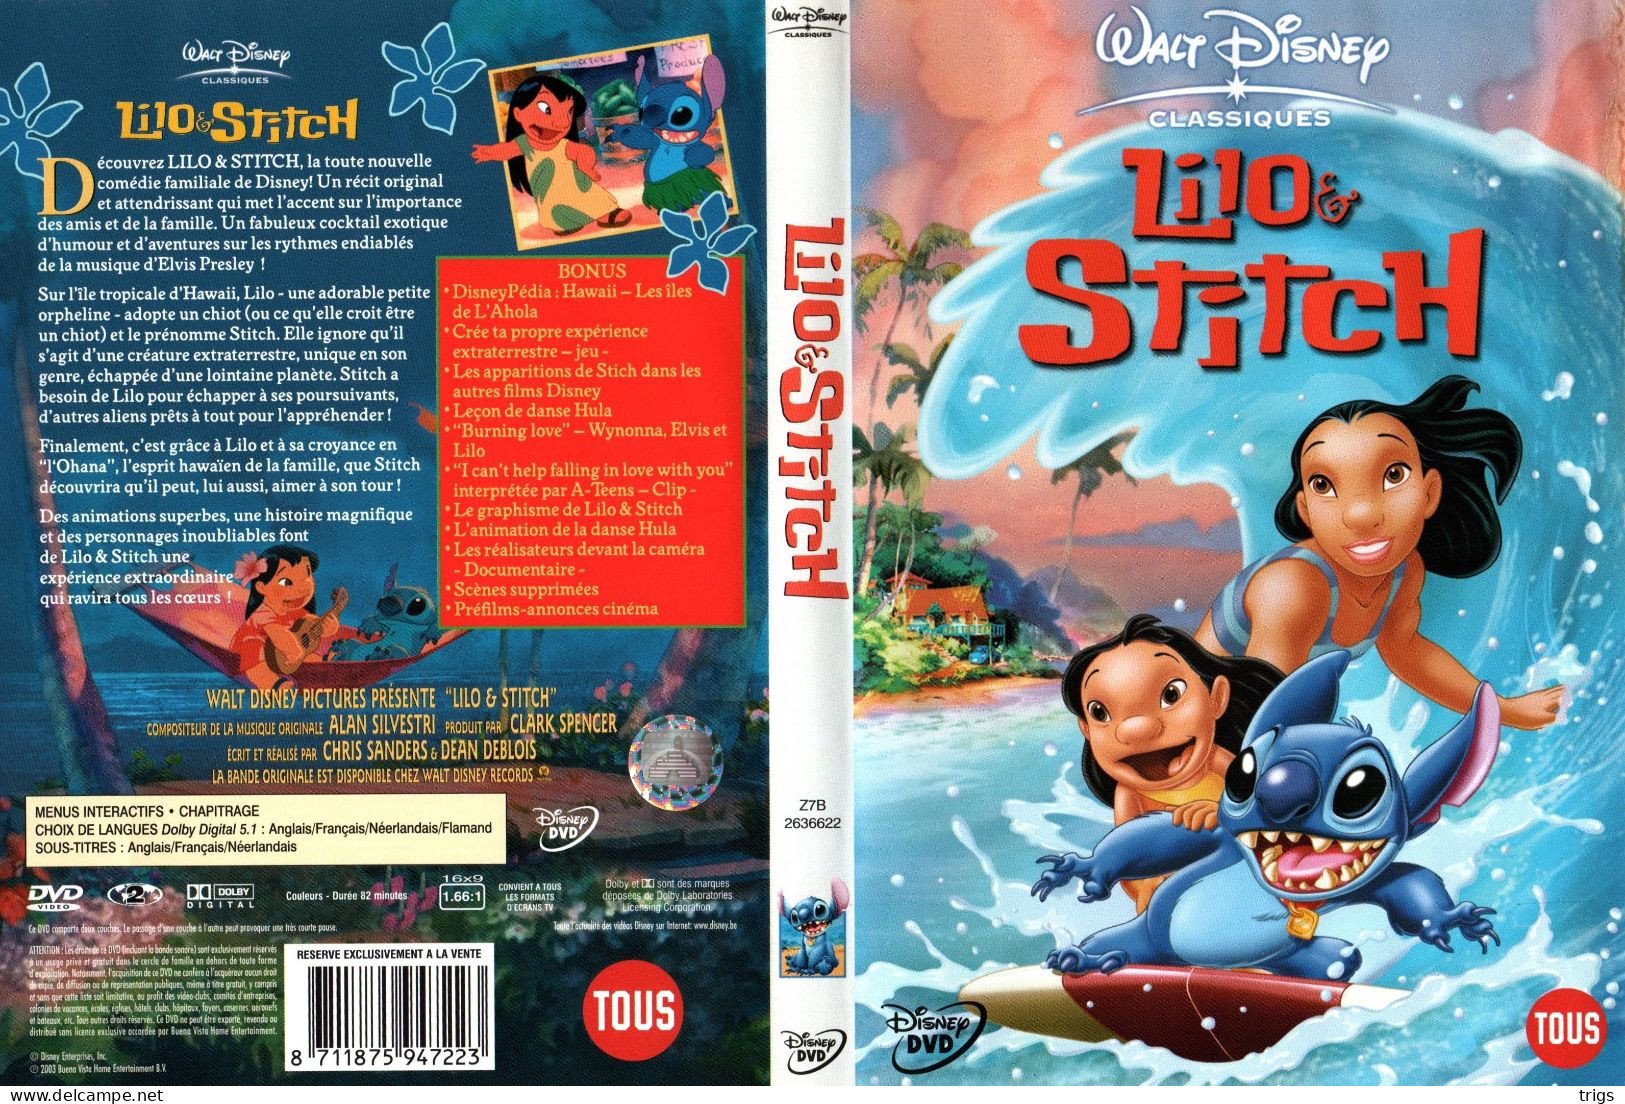 DVD - Lilo & Stitch - Animatie